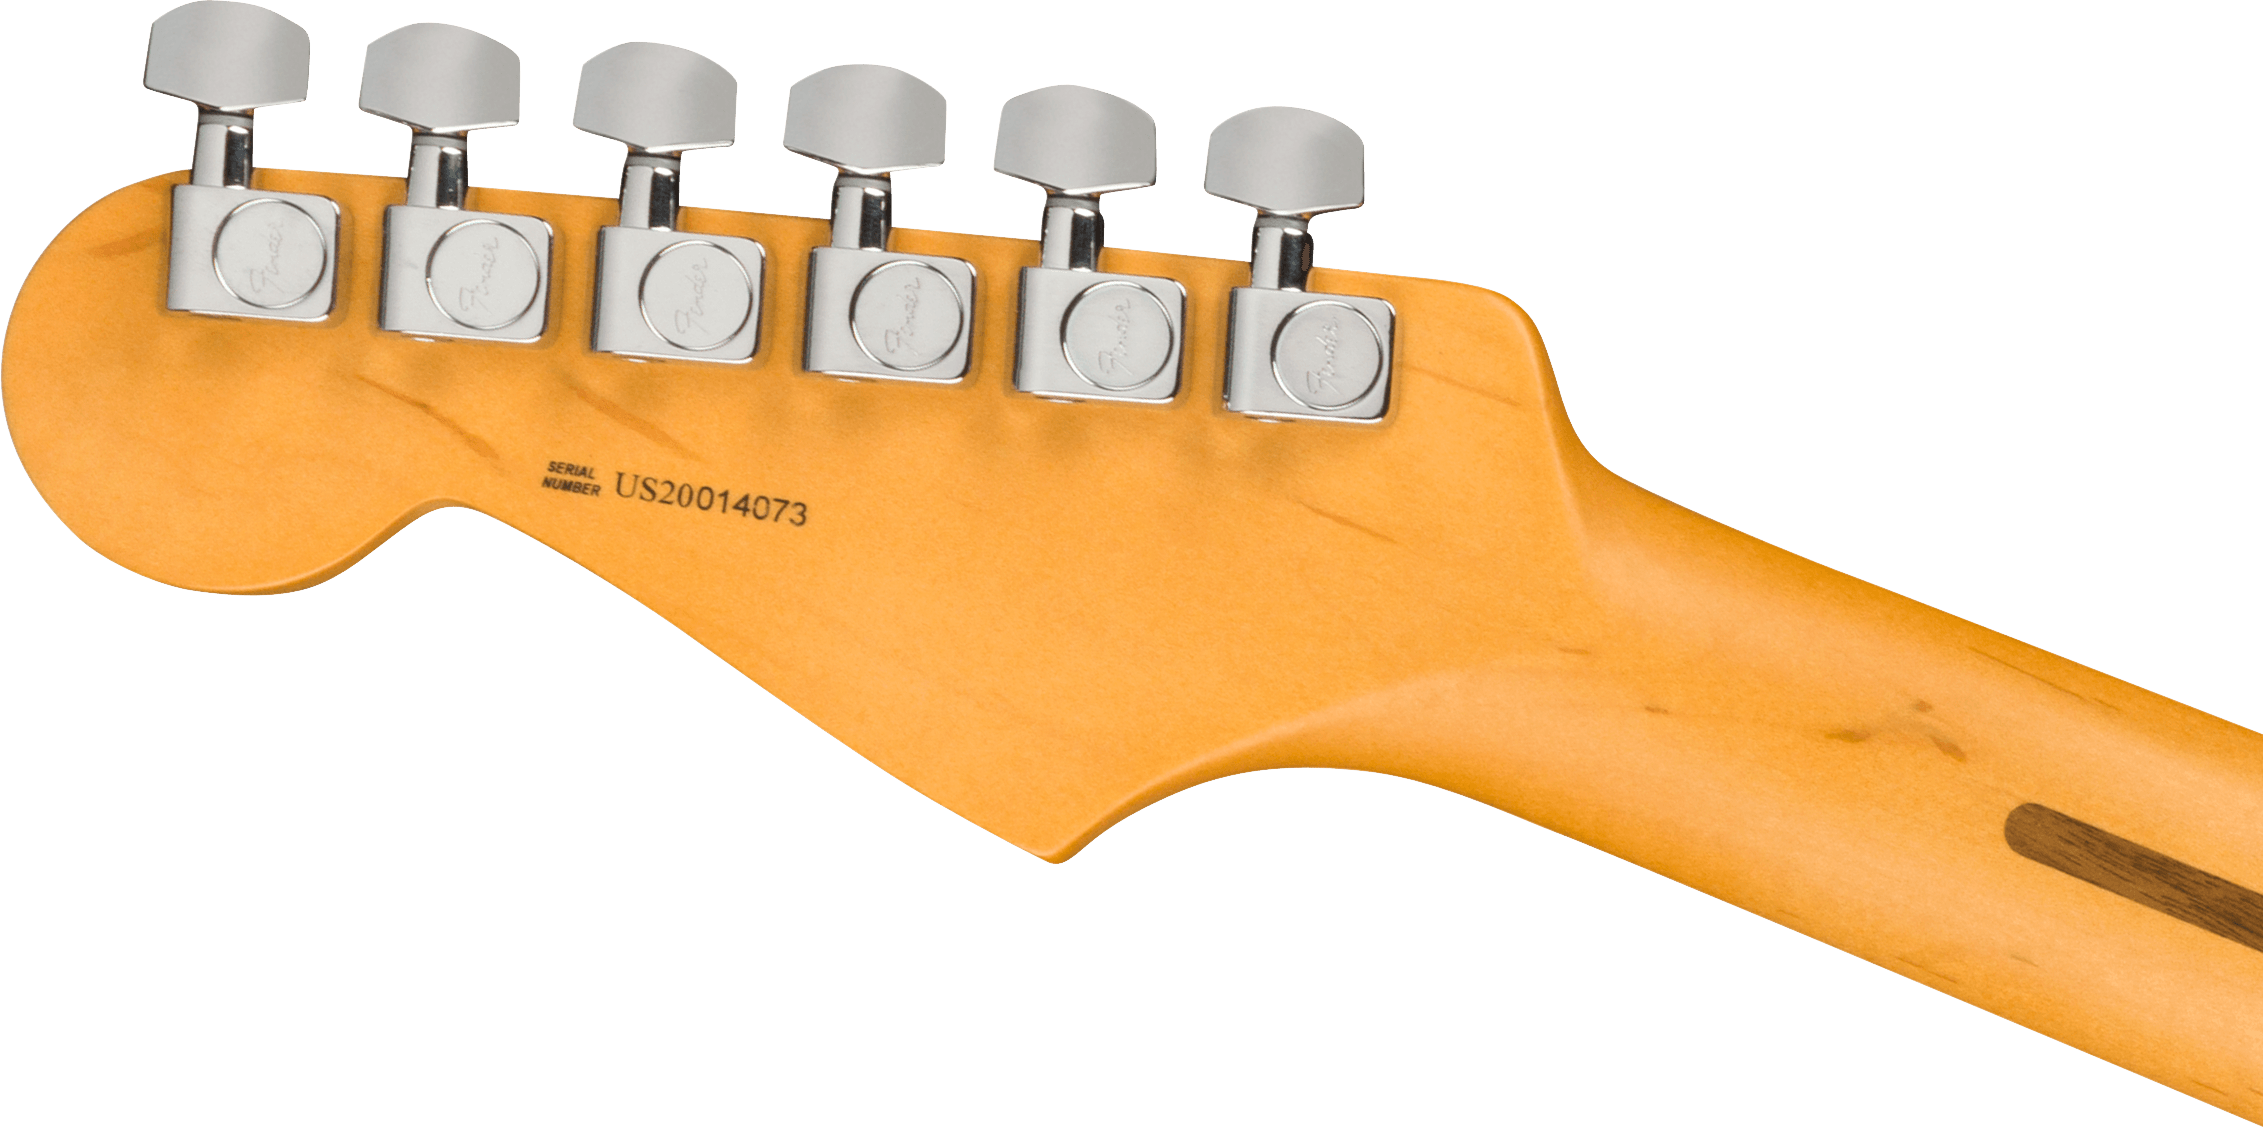 Fender American Professional II Stratocaster®, Rosewood Fingerboard, 3-Color Sunburst